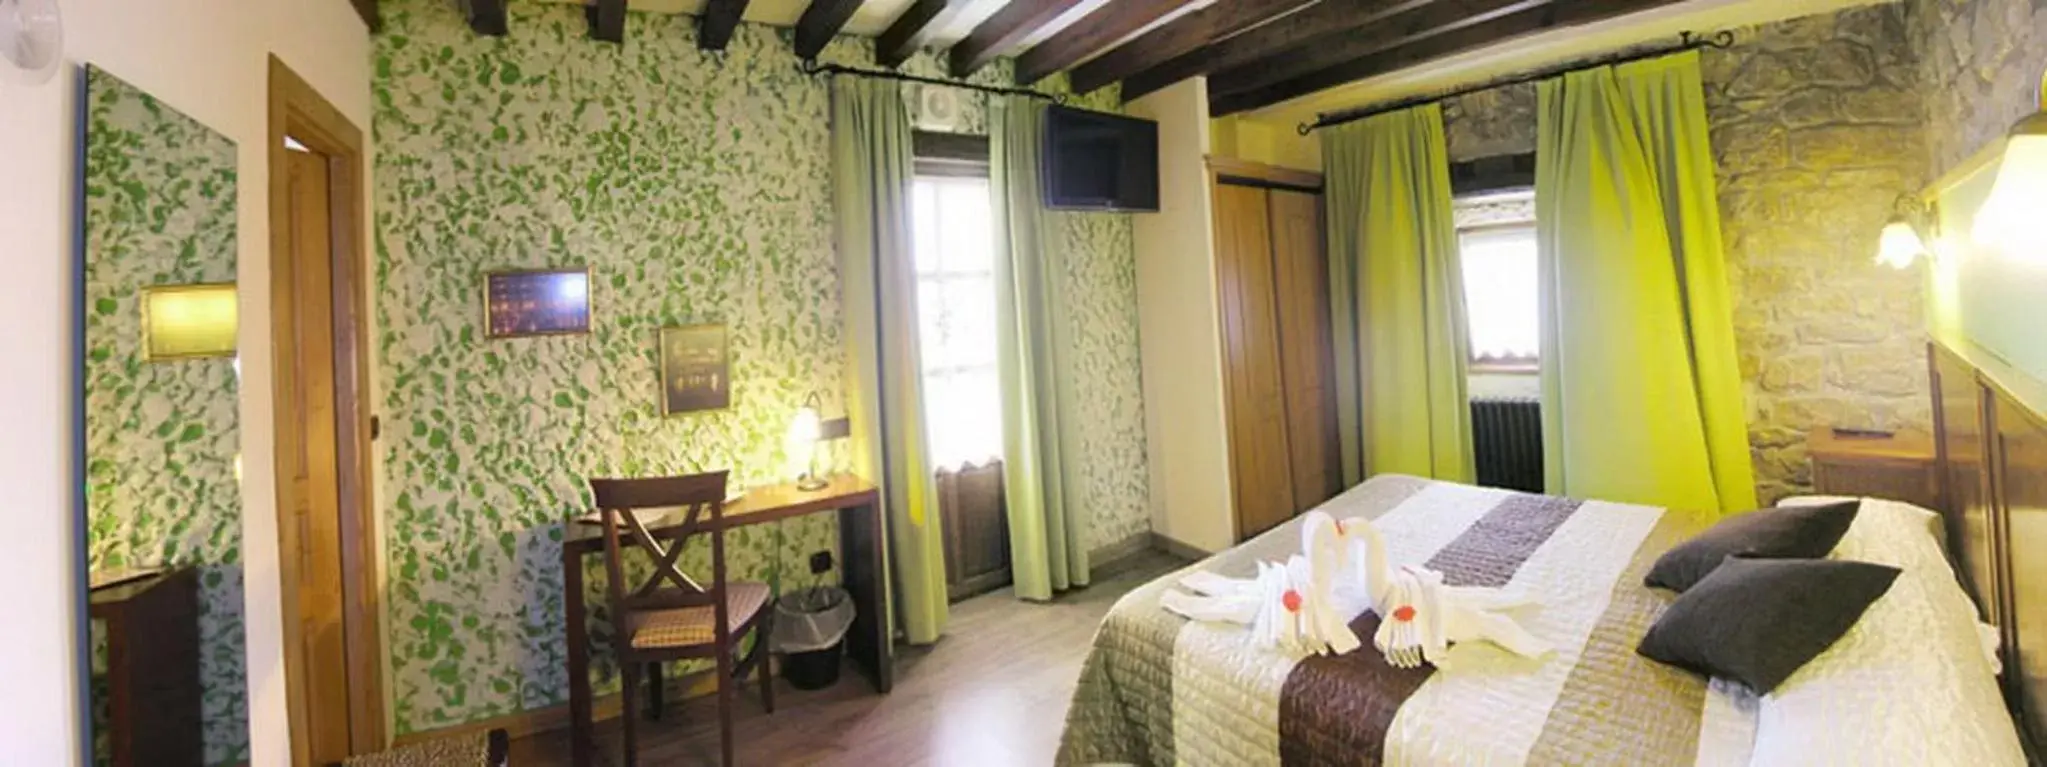 Bedroom in Posada La Victoria